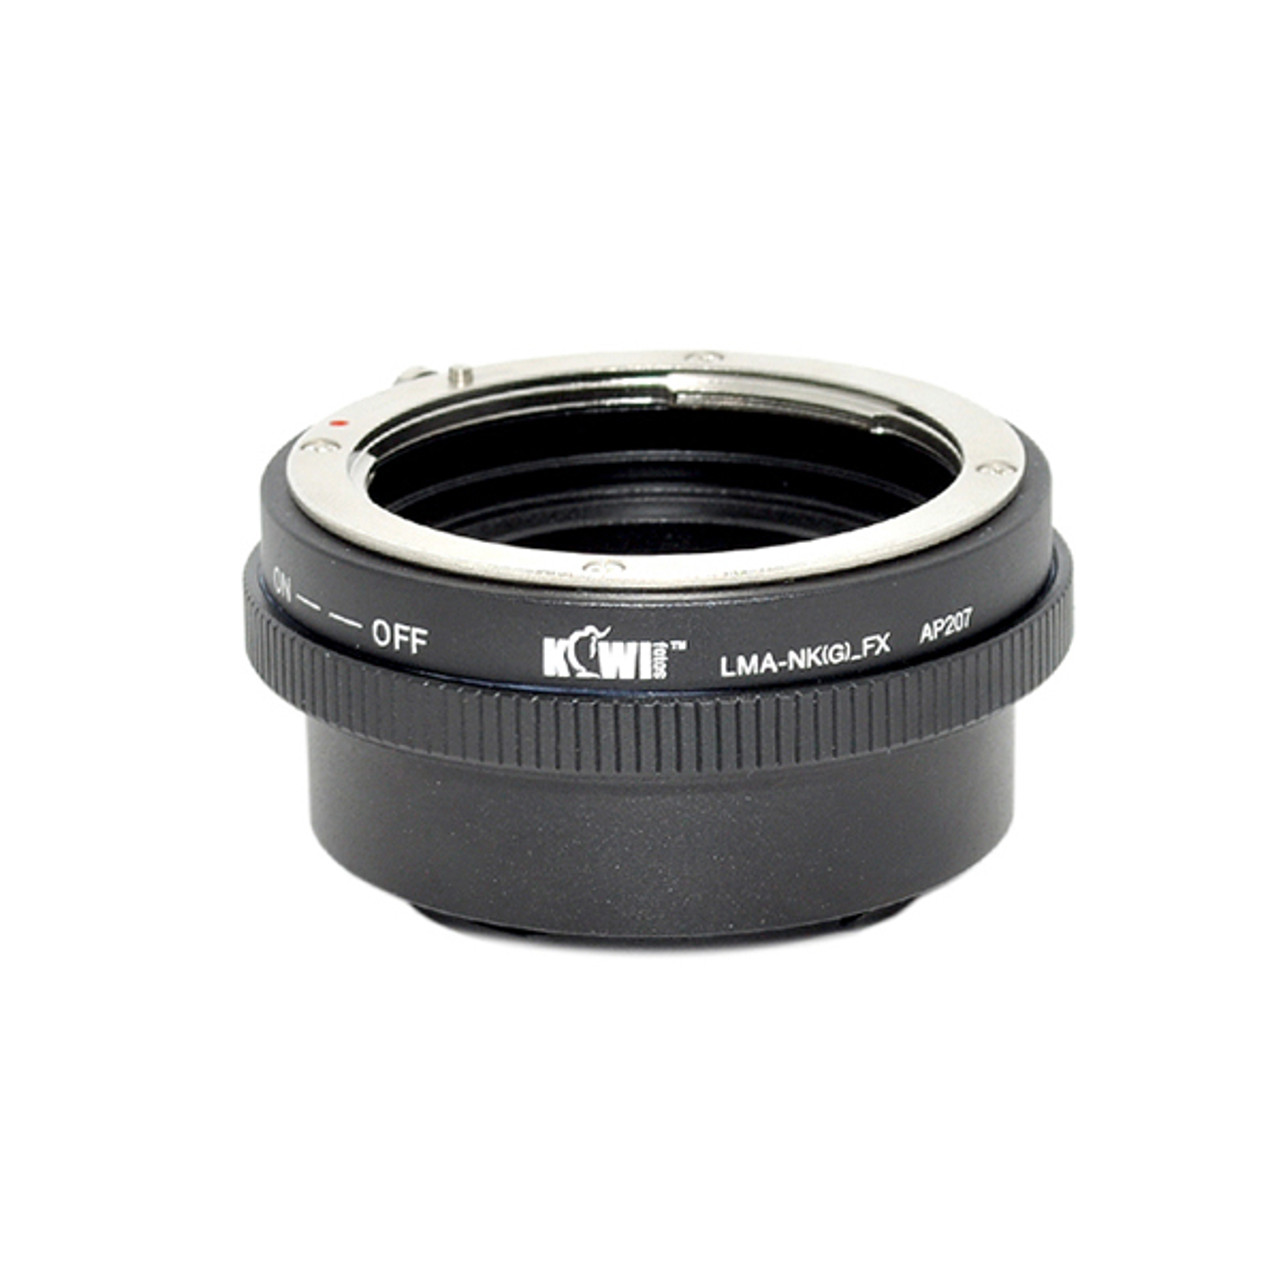 Kiwi Nikon G Lens to Fujifilm X Mount